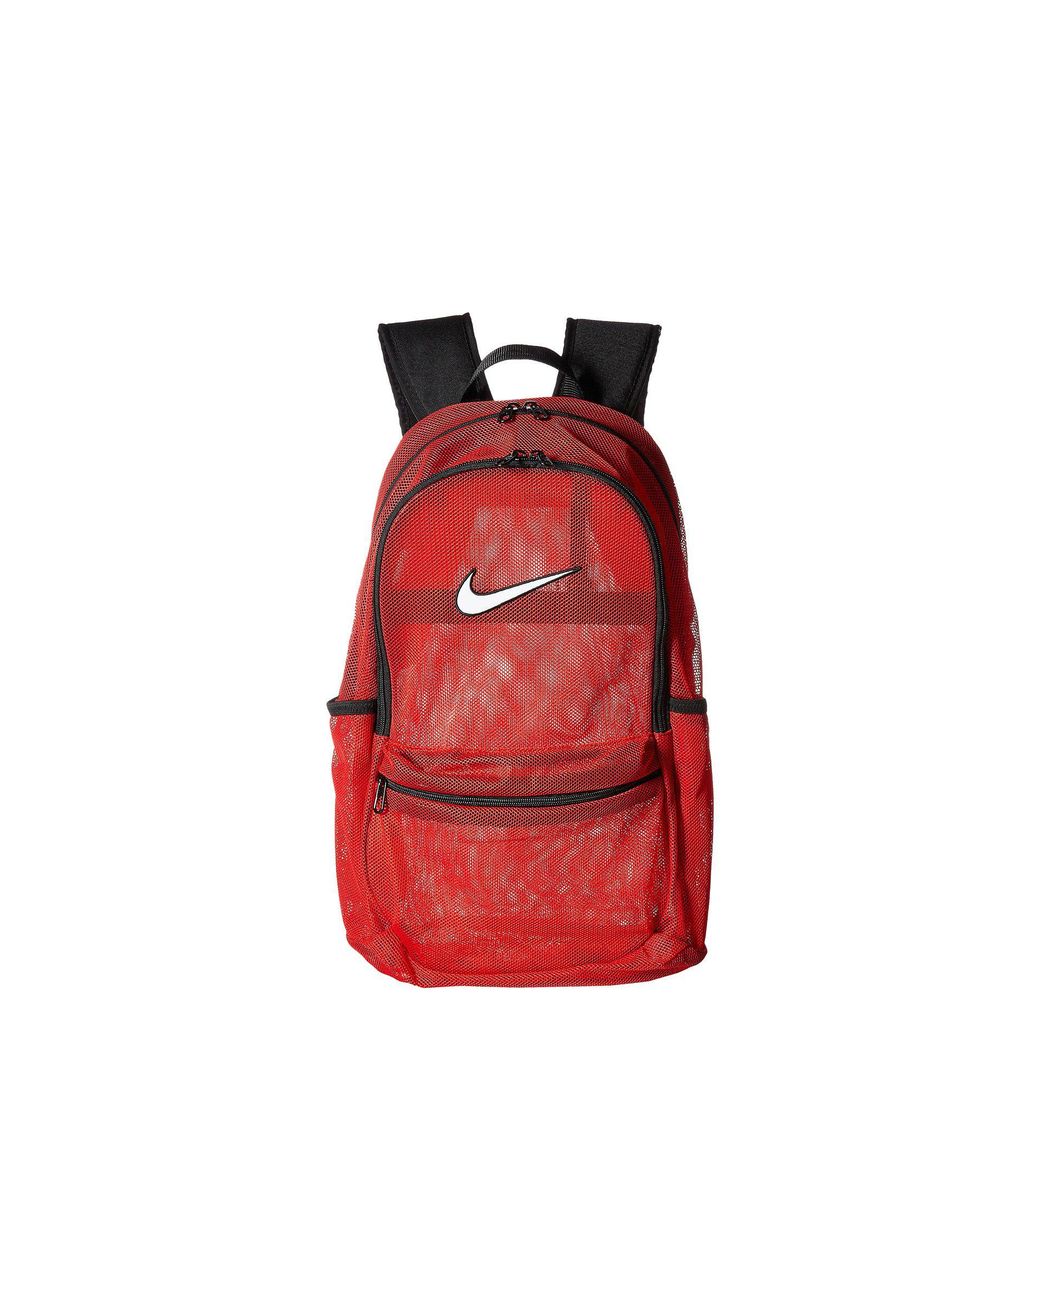 Nike SB RPM Backpack - Adobe/Black - Geometric Skateshop